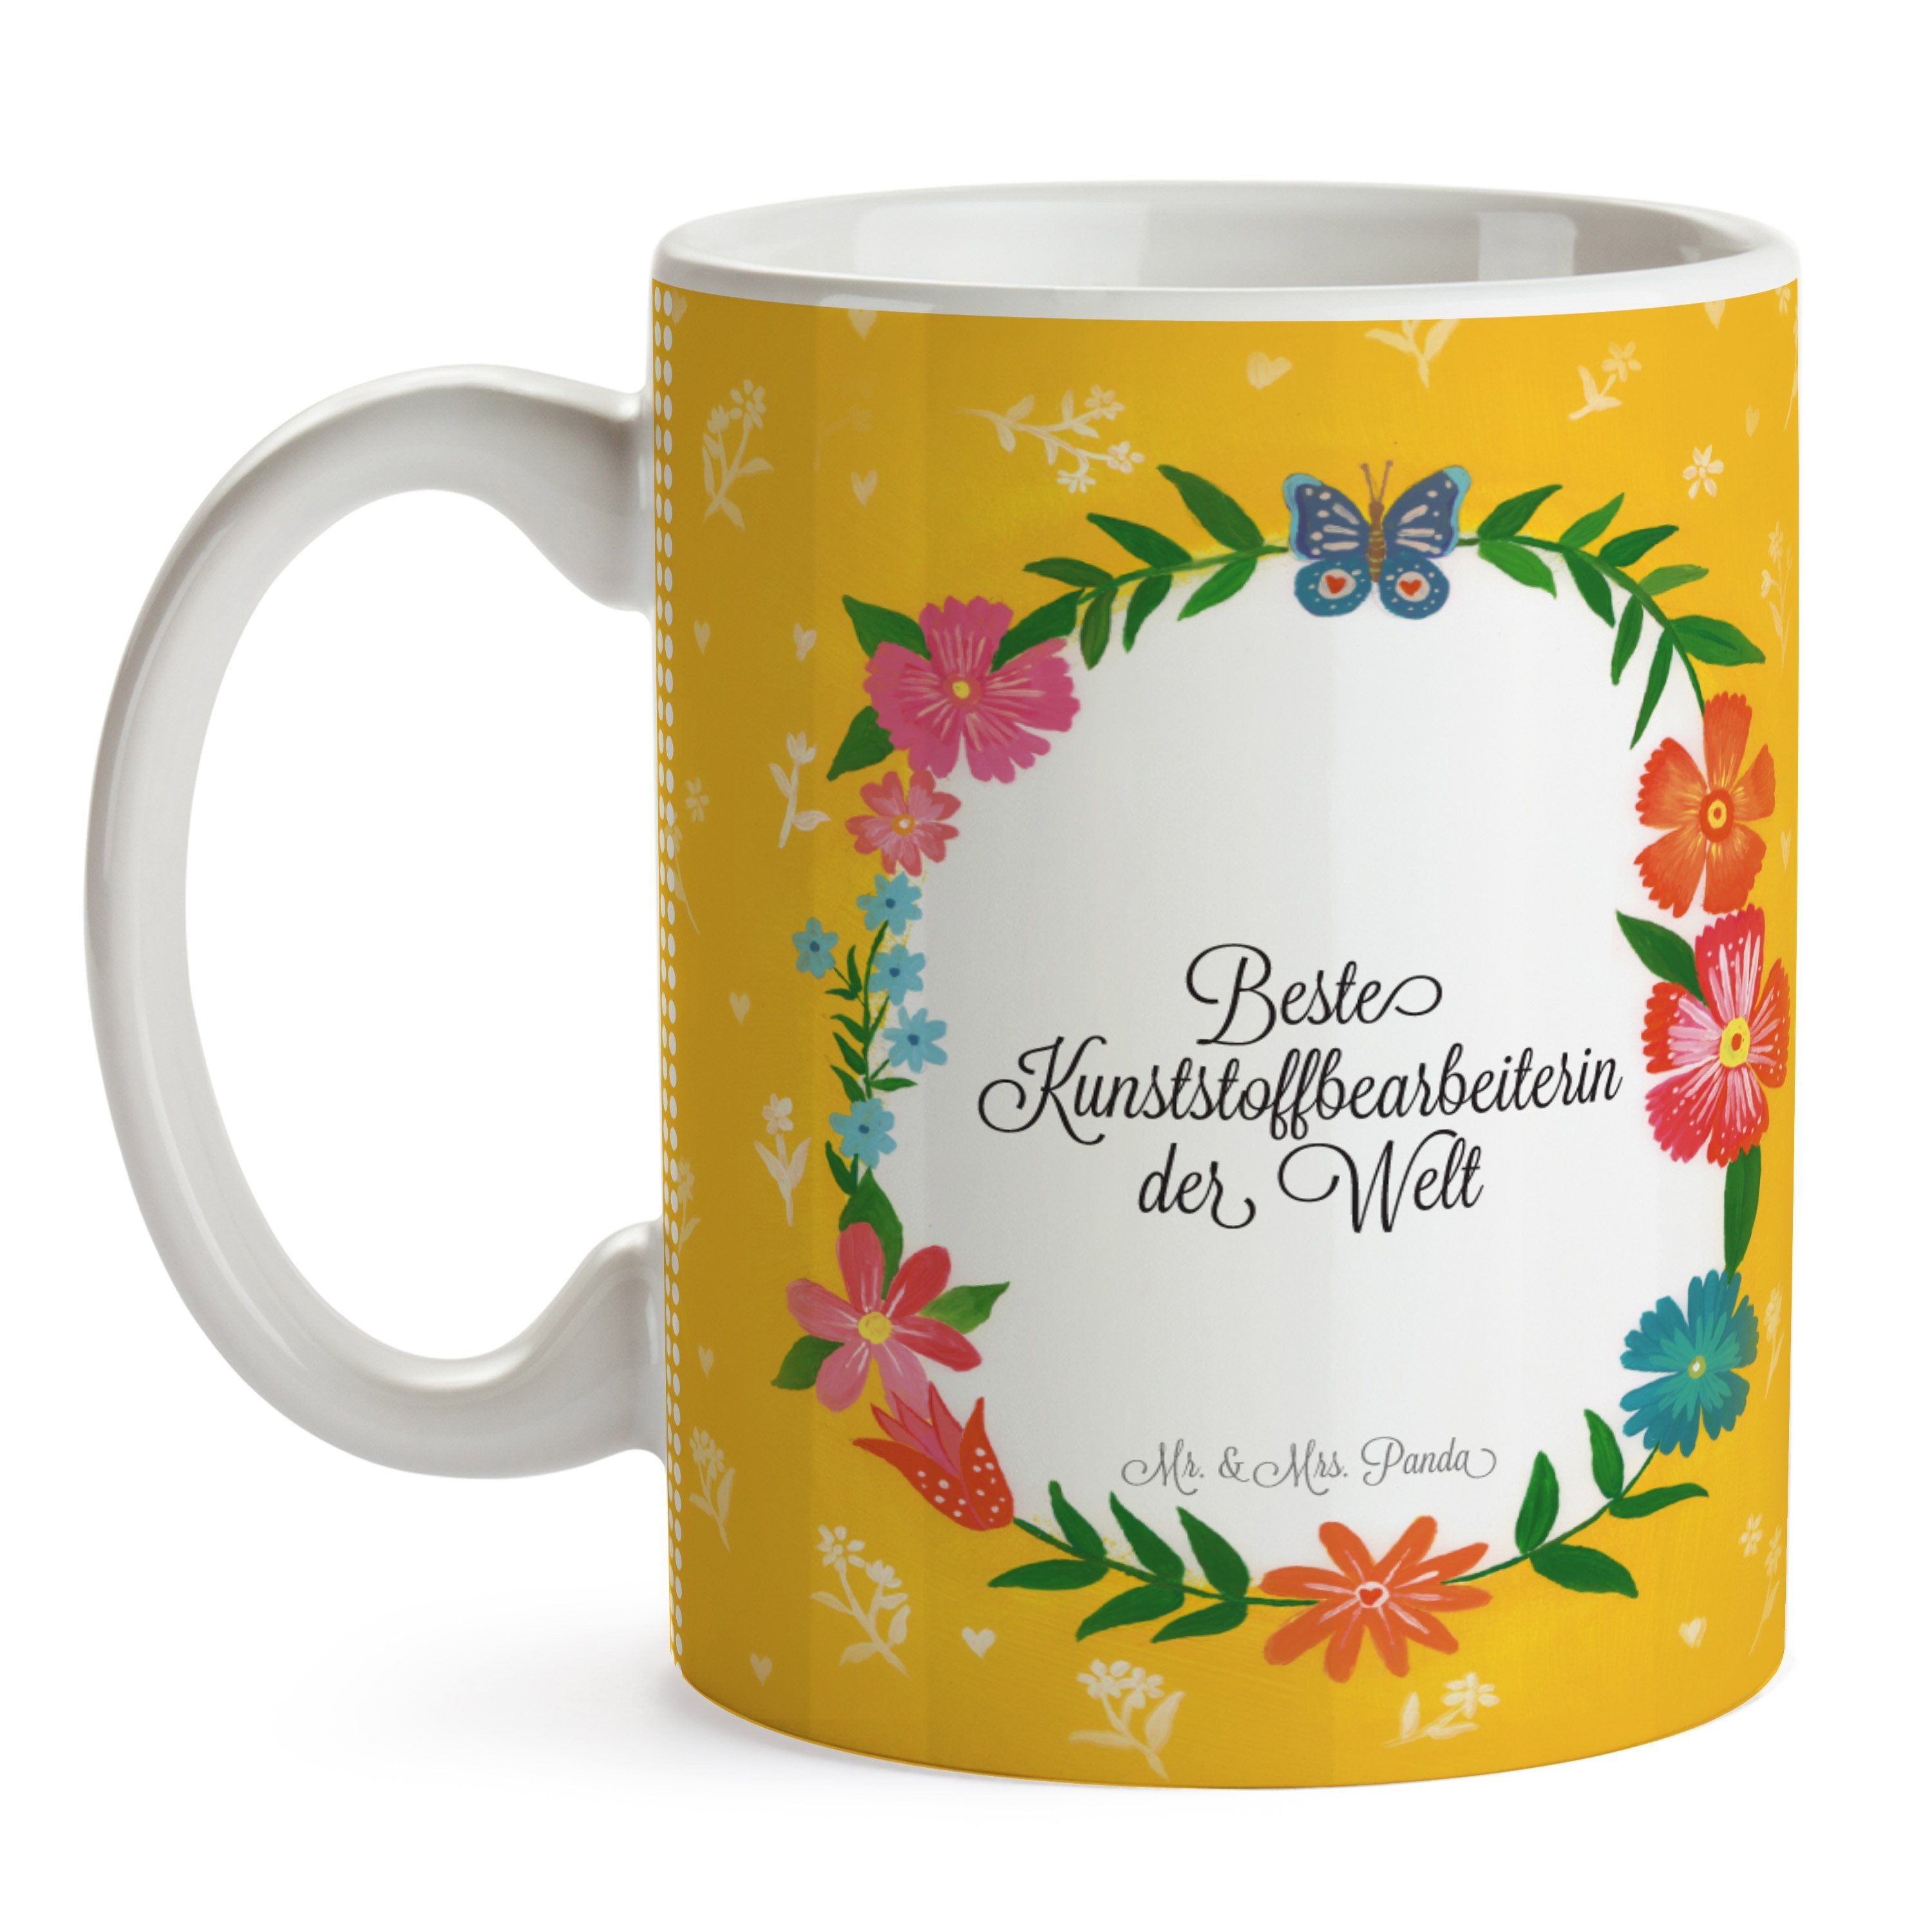 Geschenk, Ausbildung, Tasse Mrs. Panda Mr. - & Gratulation, Keramik Tasse Spr, Kunststoffbearbeiterin